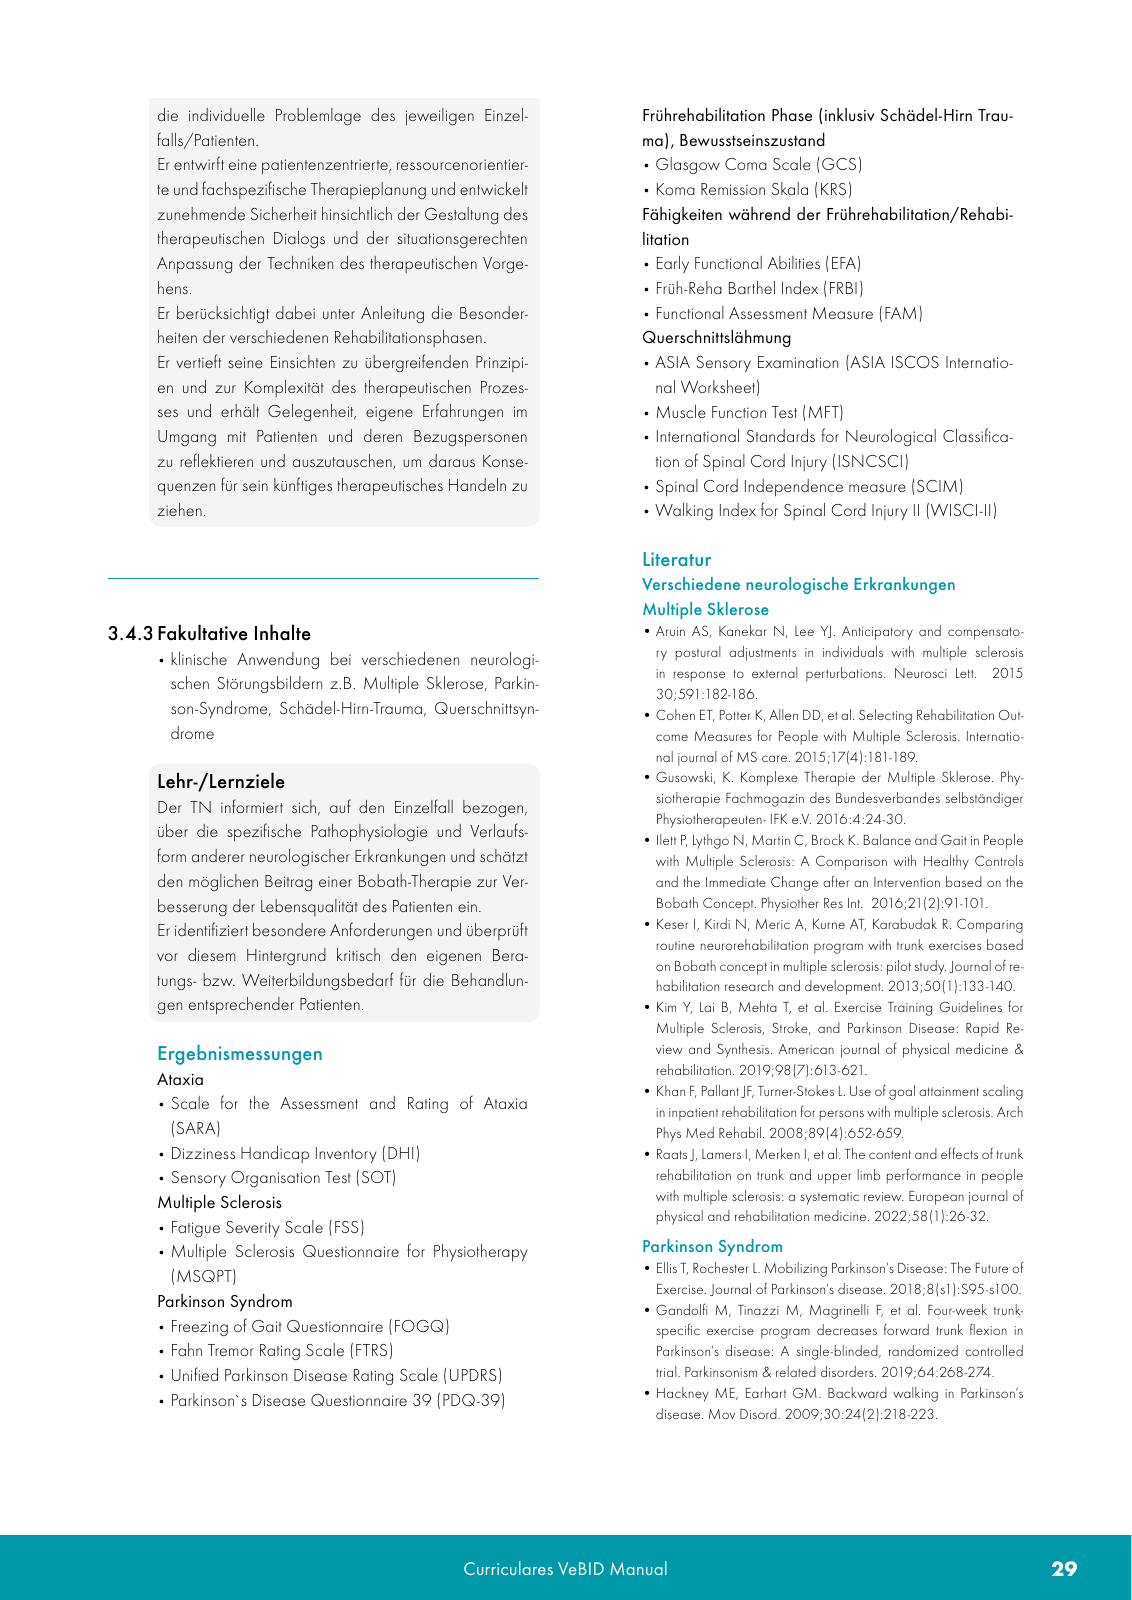 Vorschau VeBID Curriculum 2022 Seite 29